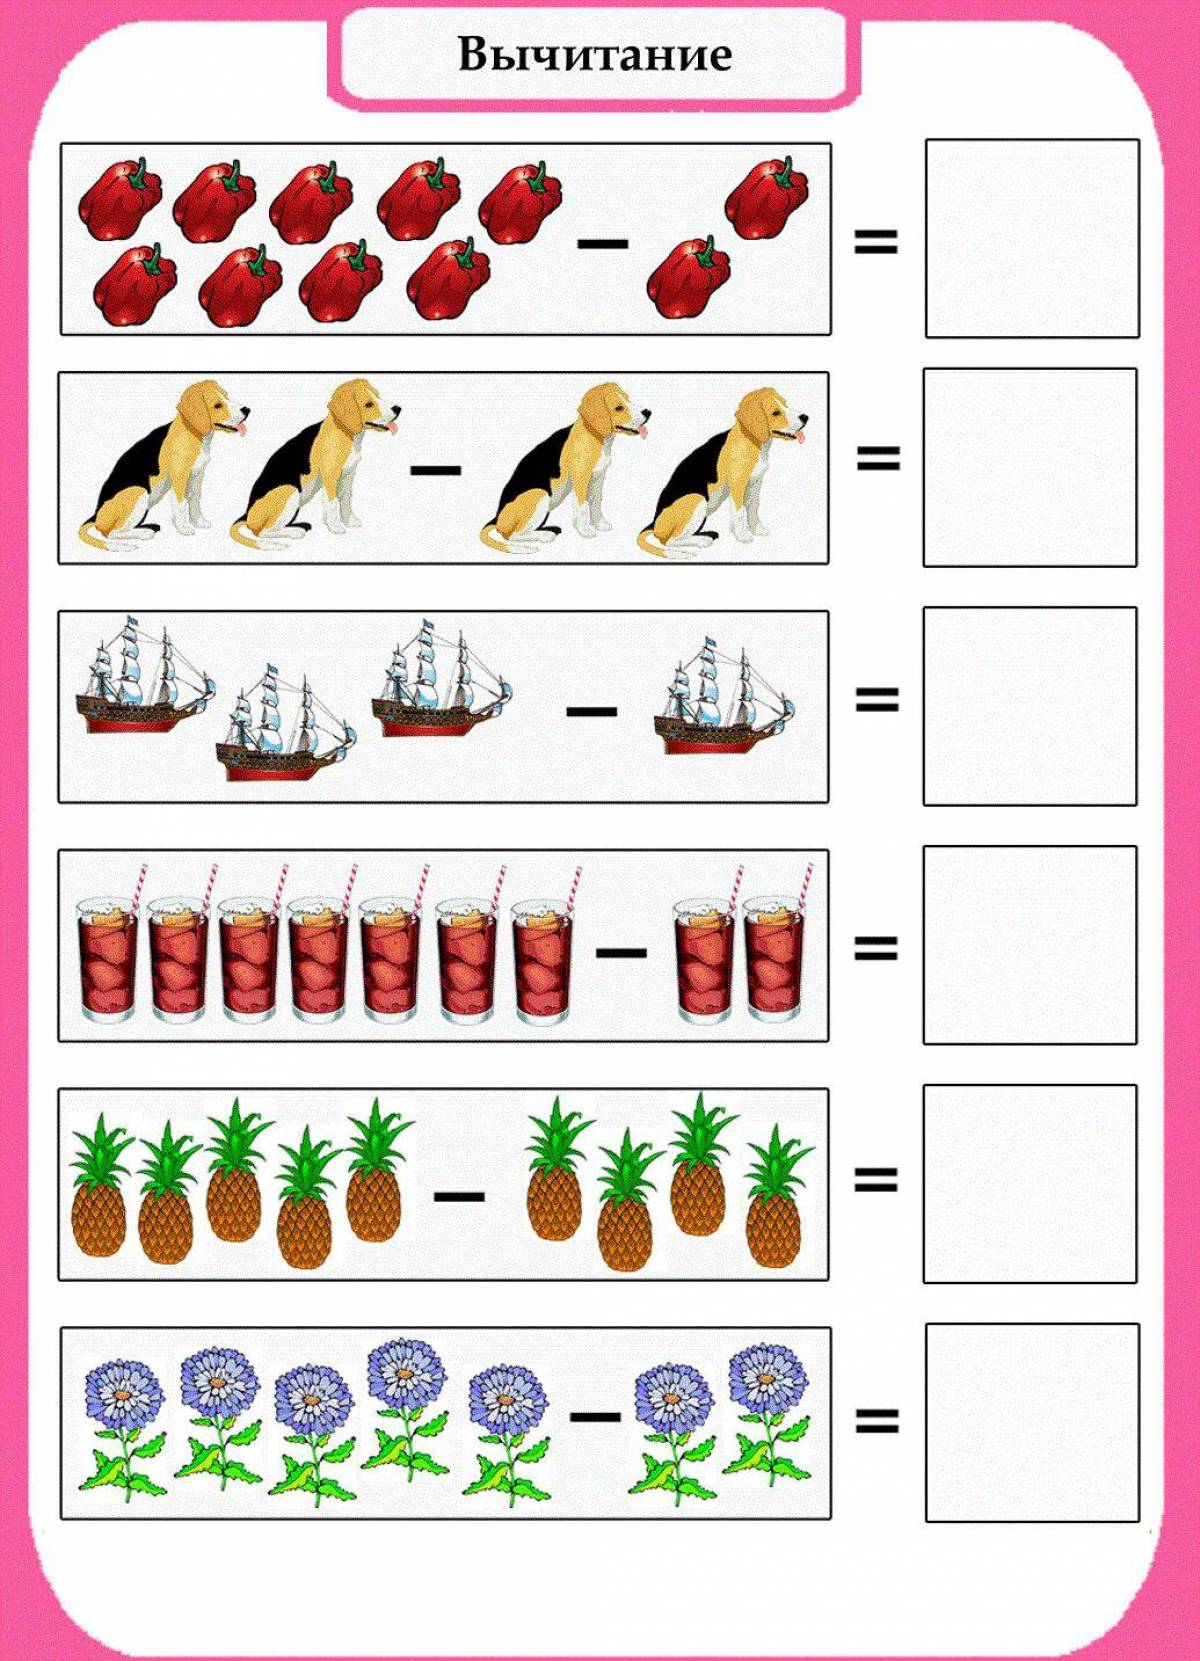 Примеры для старшей группы. Задания для дошкольников задачи на сложение и вычитание. Задачи по математике на сложение и вычитание для дошкольников. Задачи на сложение и вычитание для дошкольников для детей. Задания на вычитание для дошкольников в картинках.